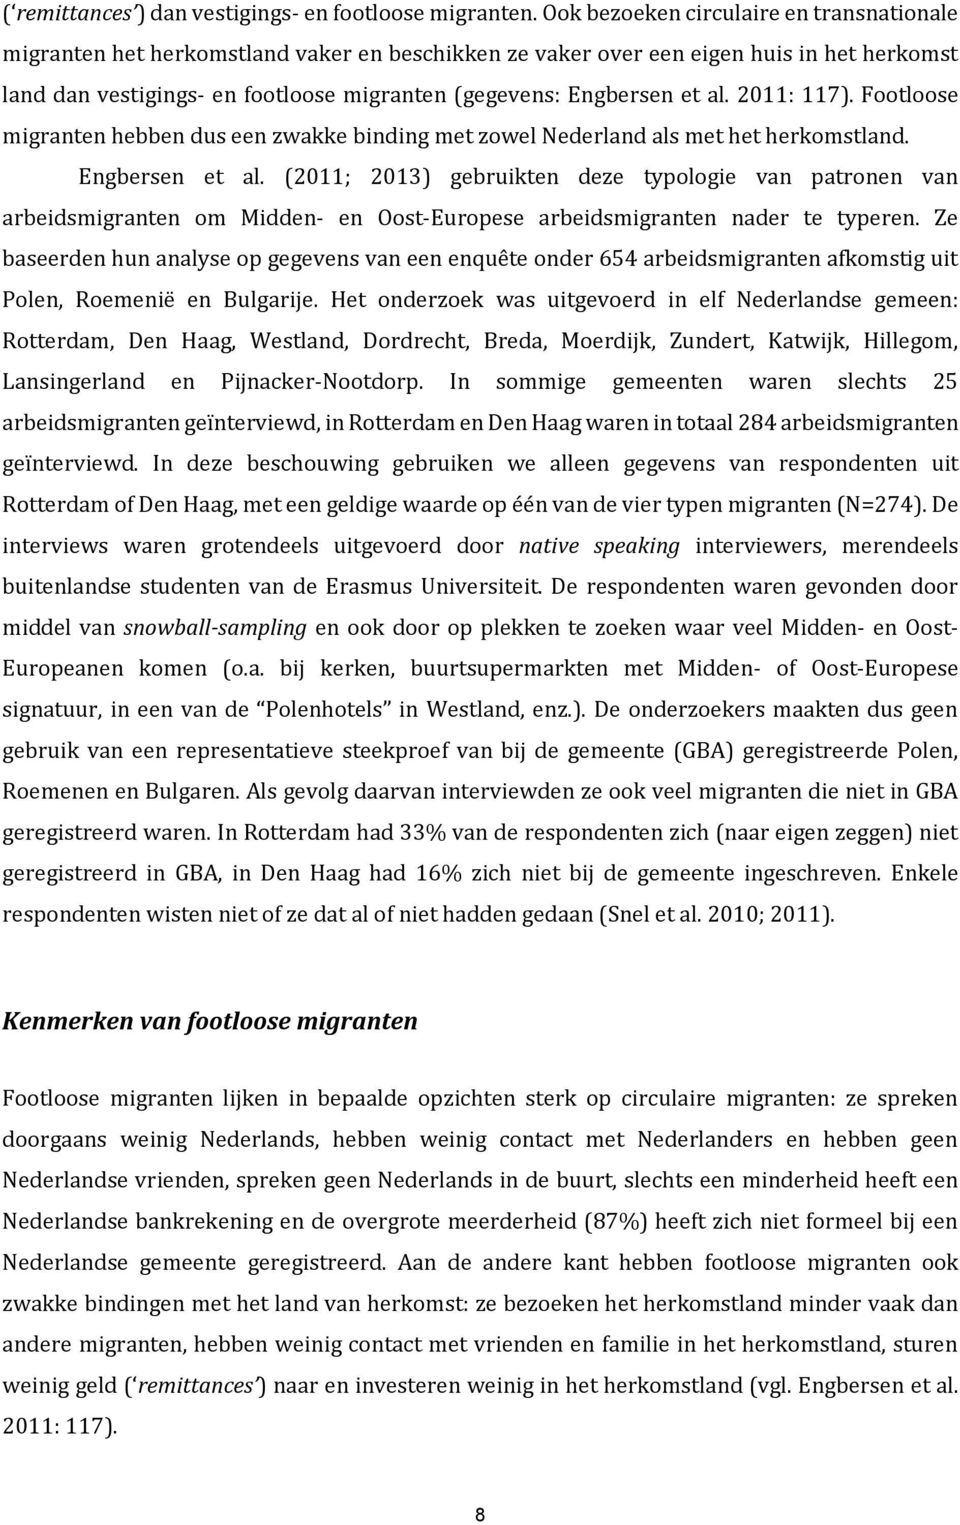 et al. 2011: 117). Footloose migranten hebben dus een zwakke binding met zowel Nederland als met het herkomstland. Engbersen et al.